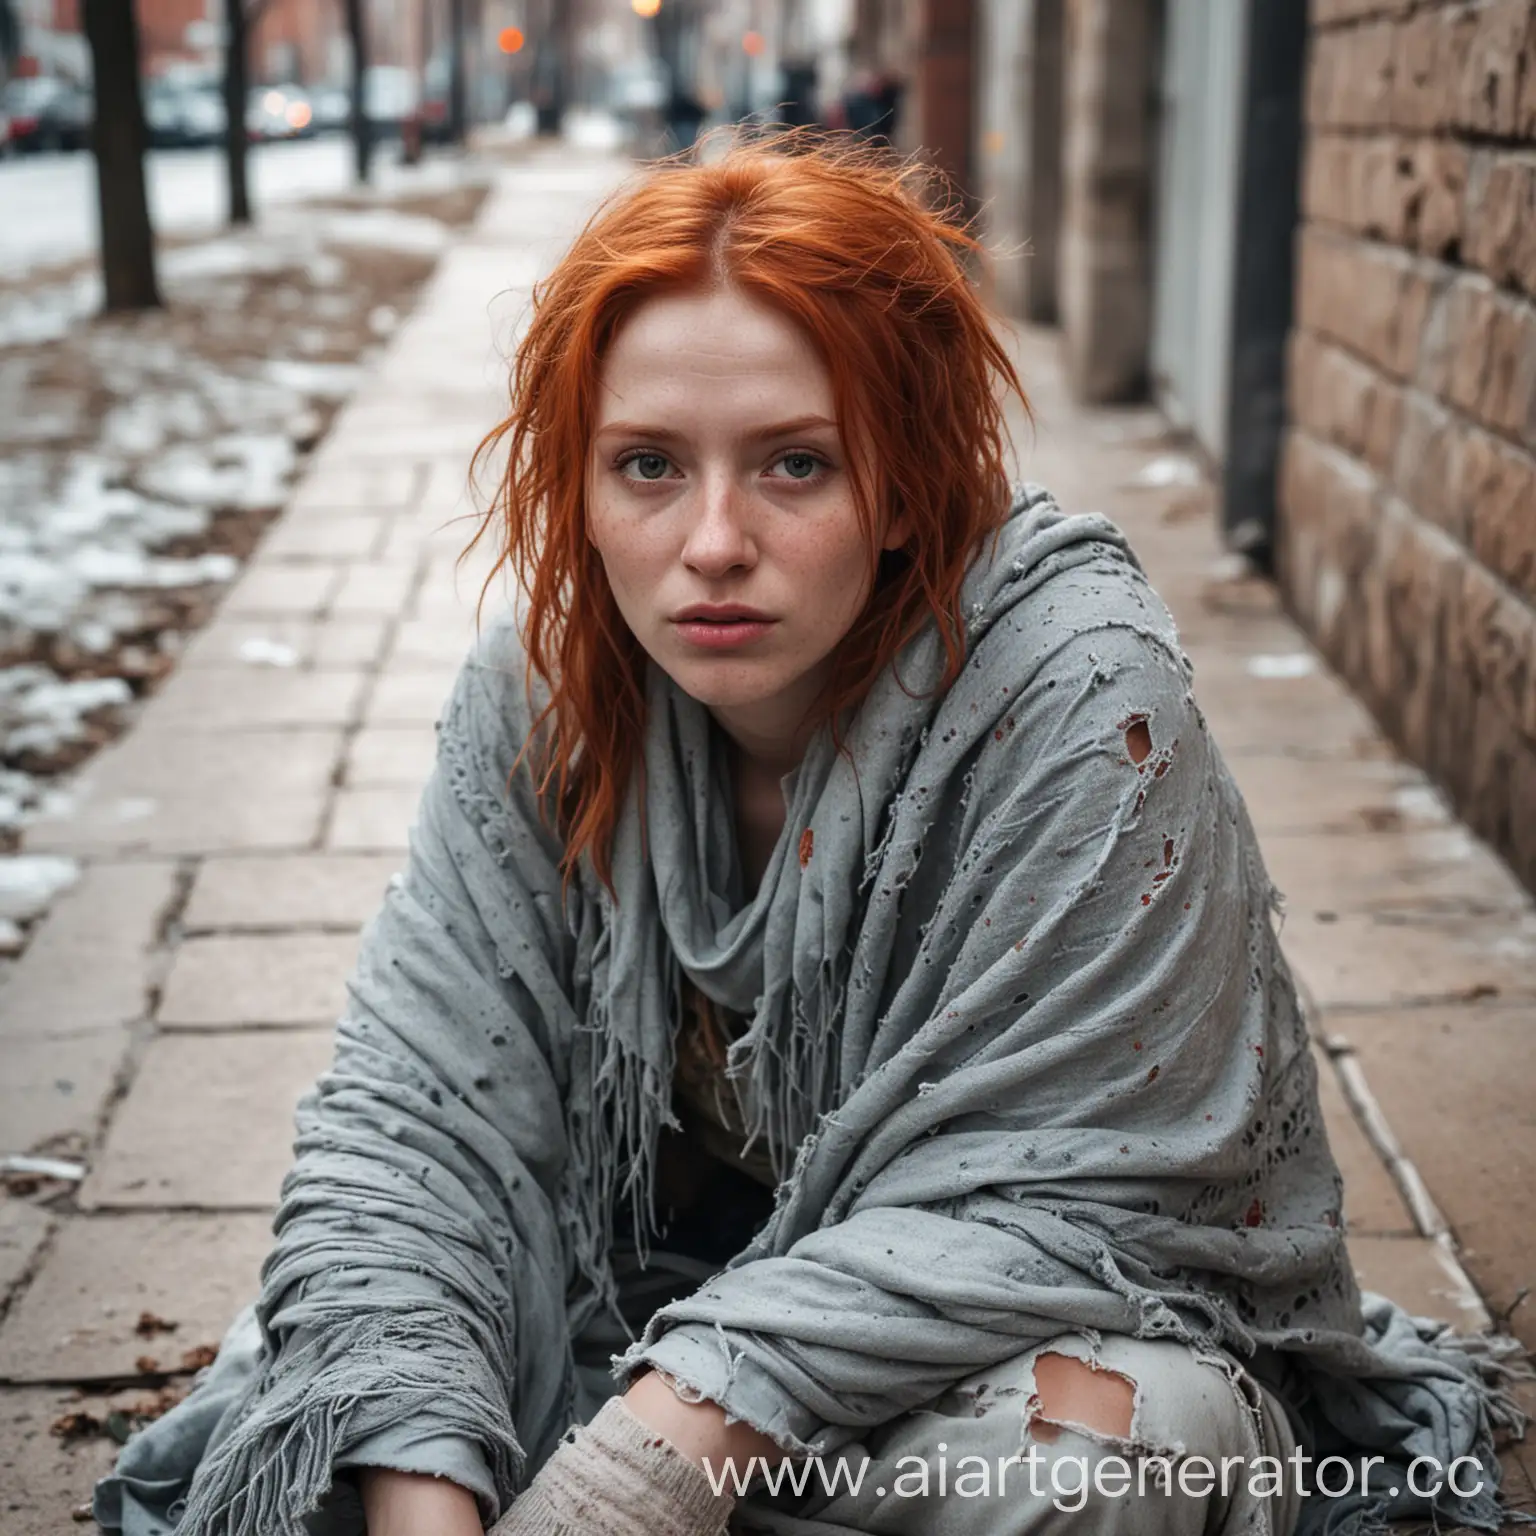 Рыжая девушка с порванной одеждой, грязная, с растрепанными волосами, укрытая в плед сидит на тротуаре в холодную погоду